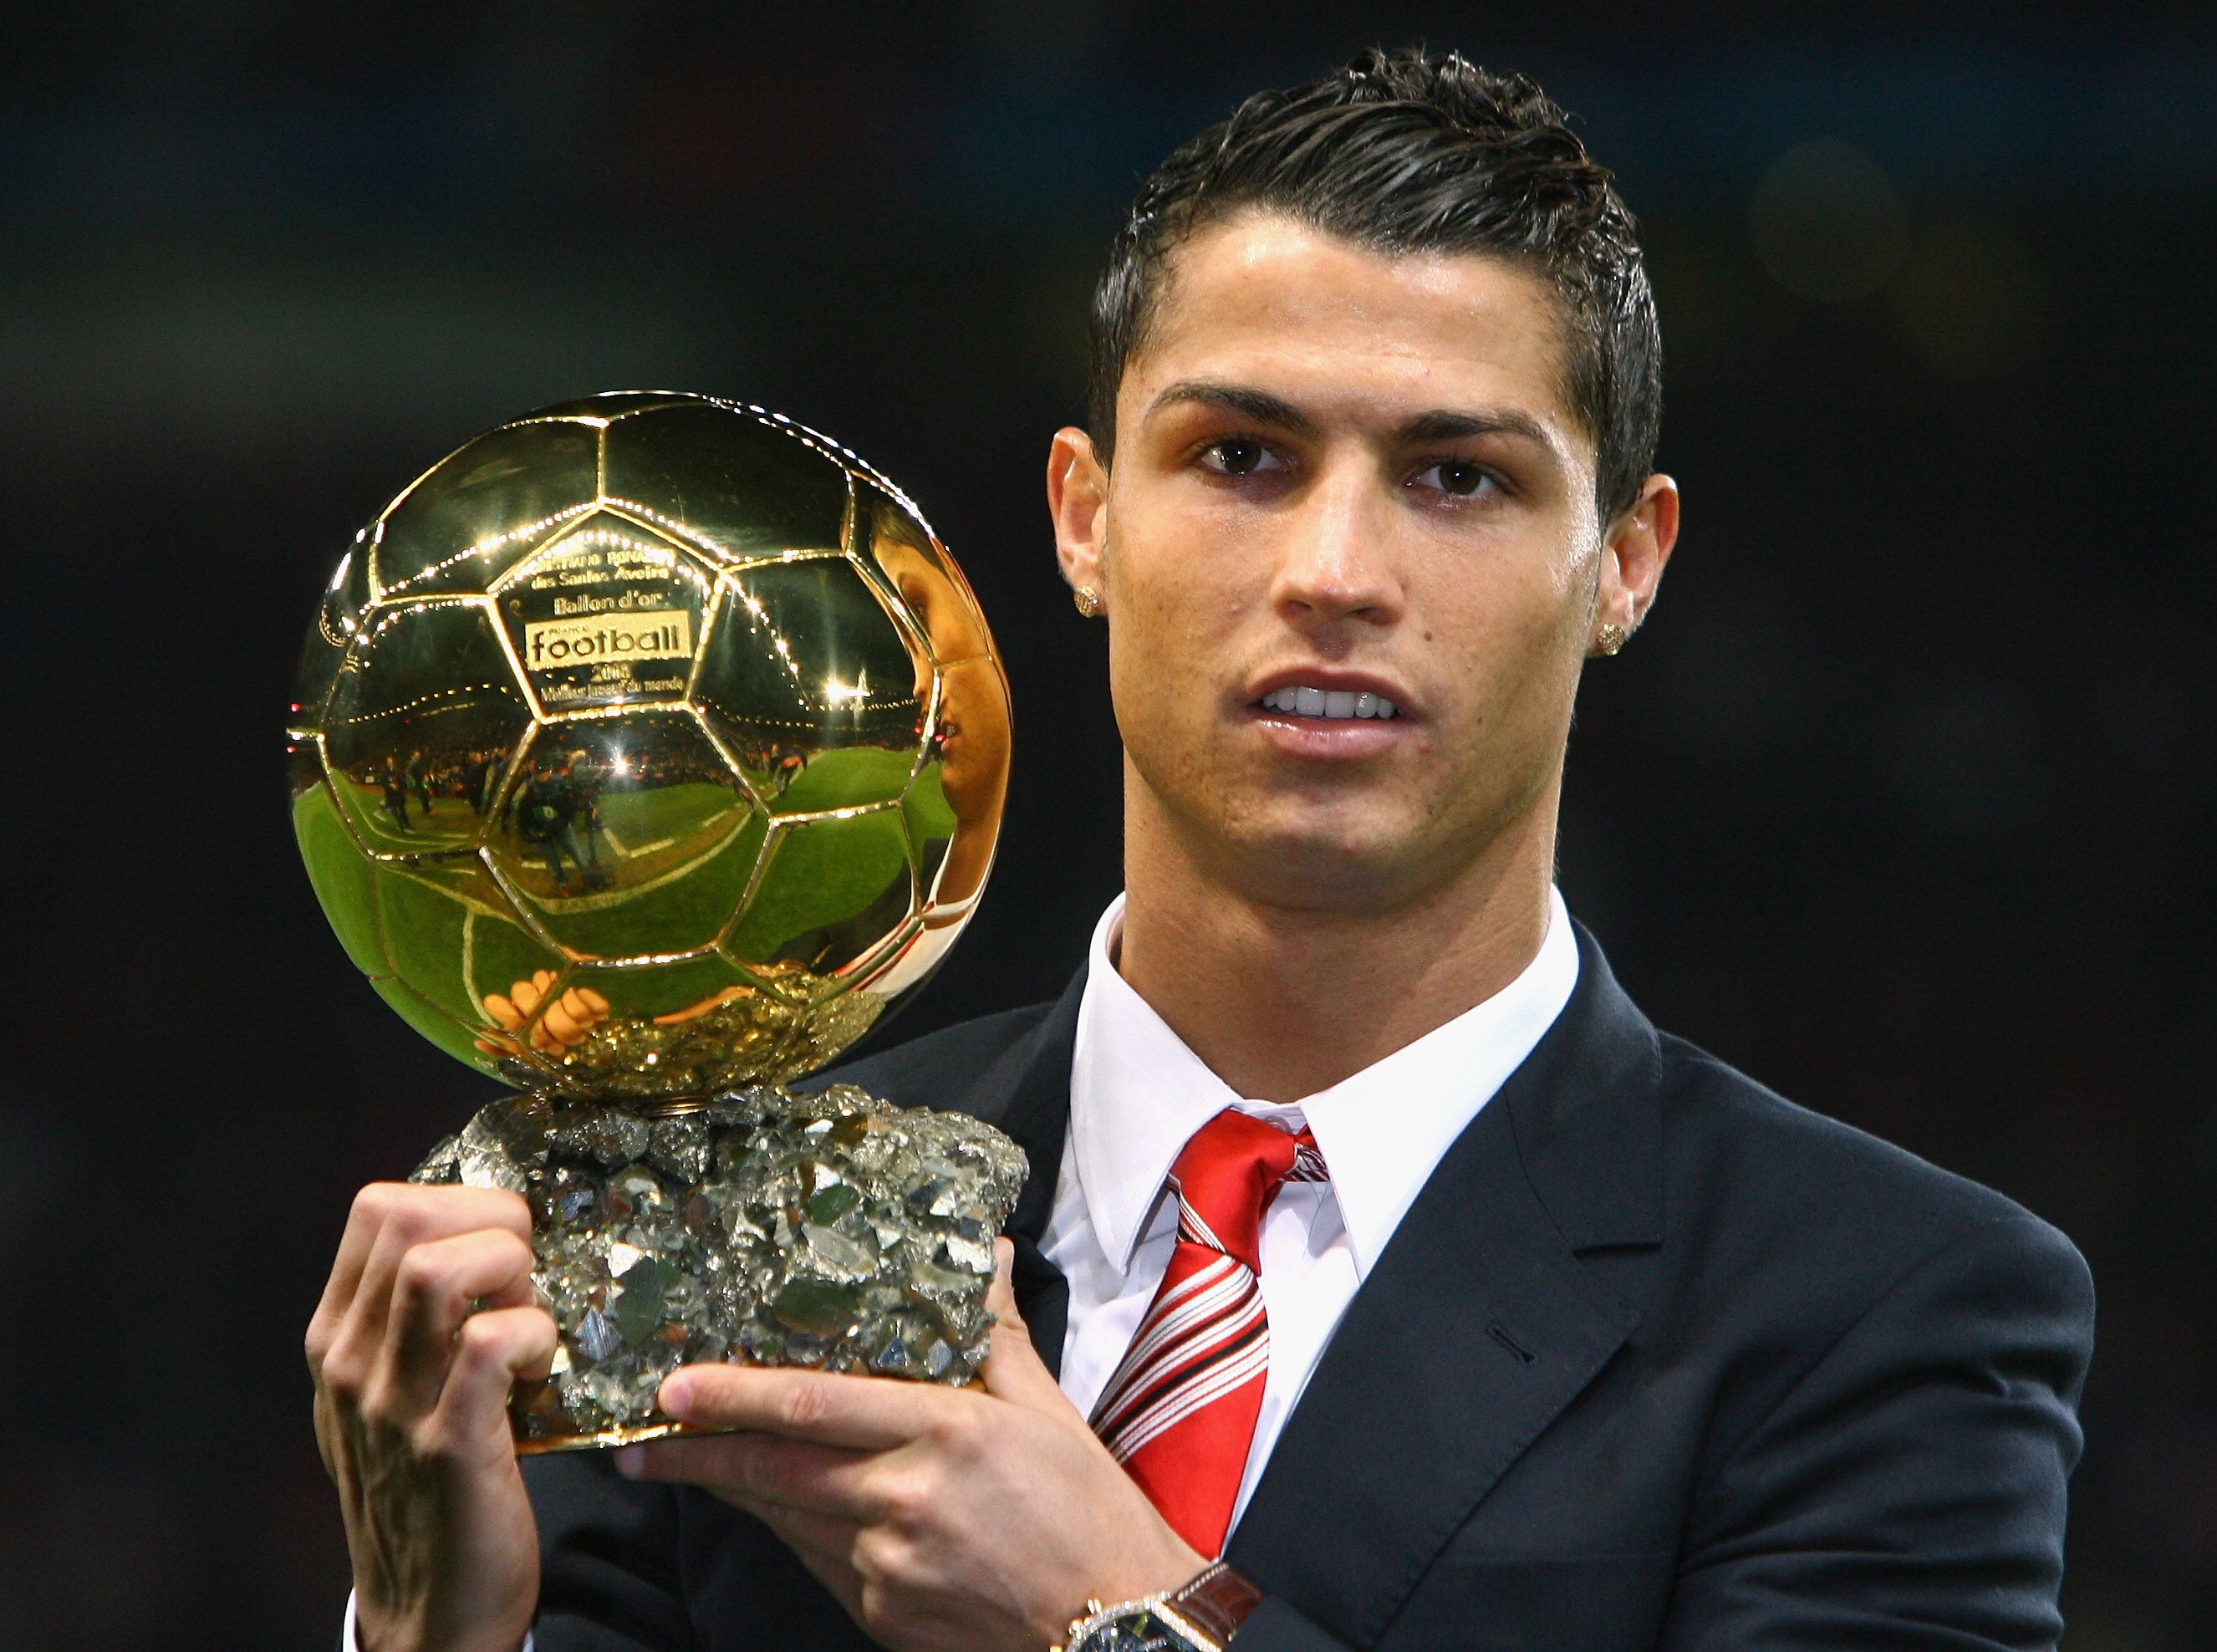 Cristiano Ronaldo Ballon D Or 2008 - Cristiano Ronaldo 2014 Ballon D , HD Wallpaper & Backgrounds